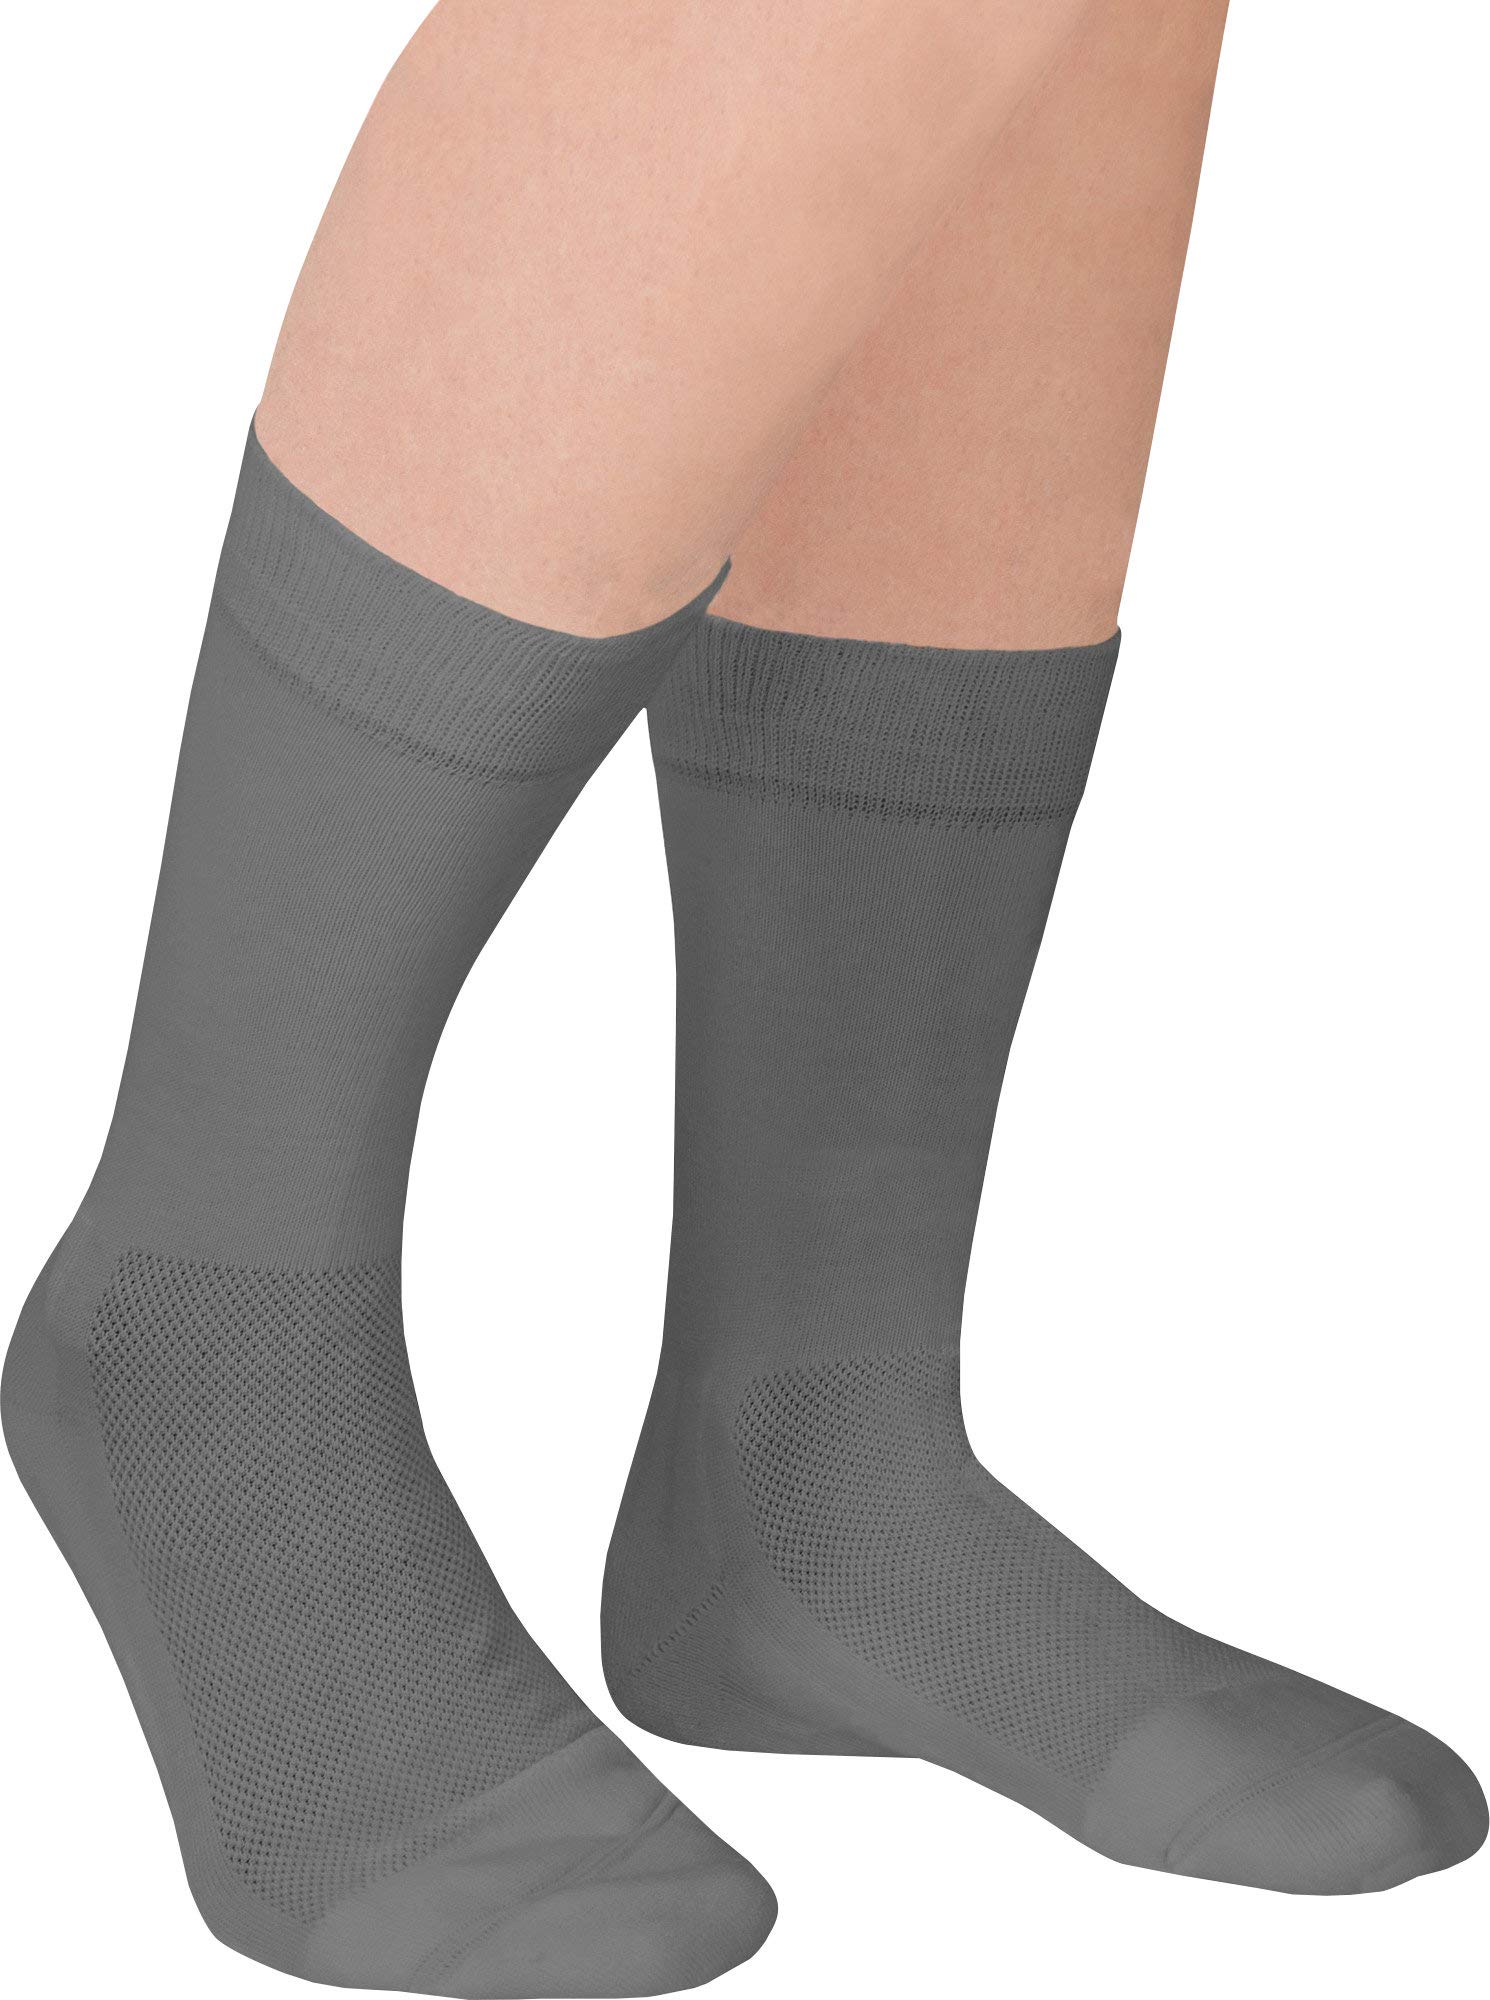 FußGut Unisex-Venenfreund-Socken 2 Paar grau Größe 43 - 45